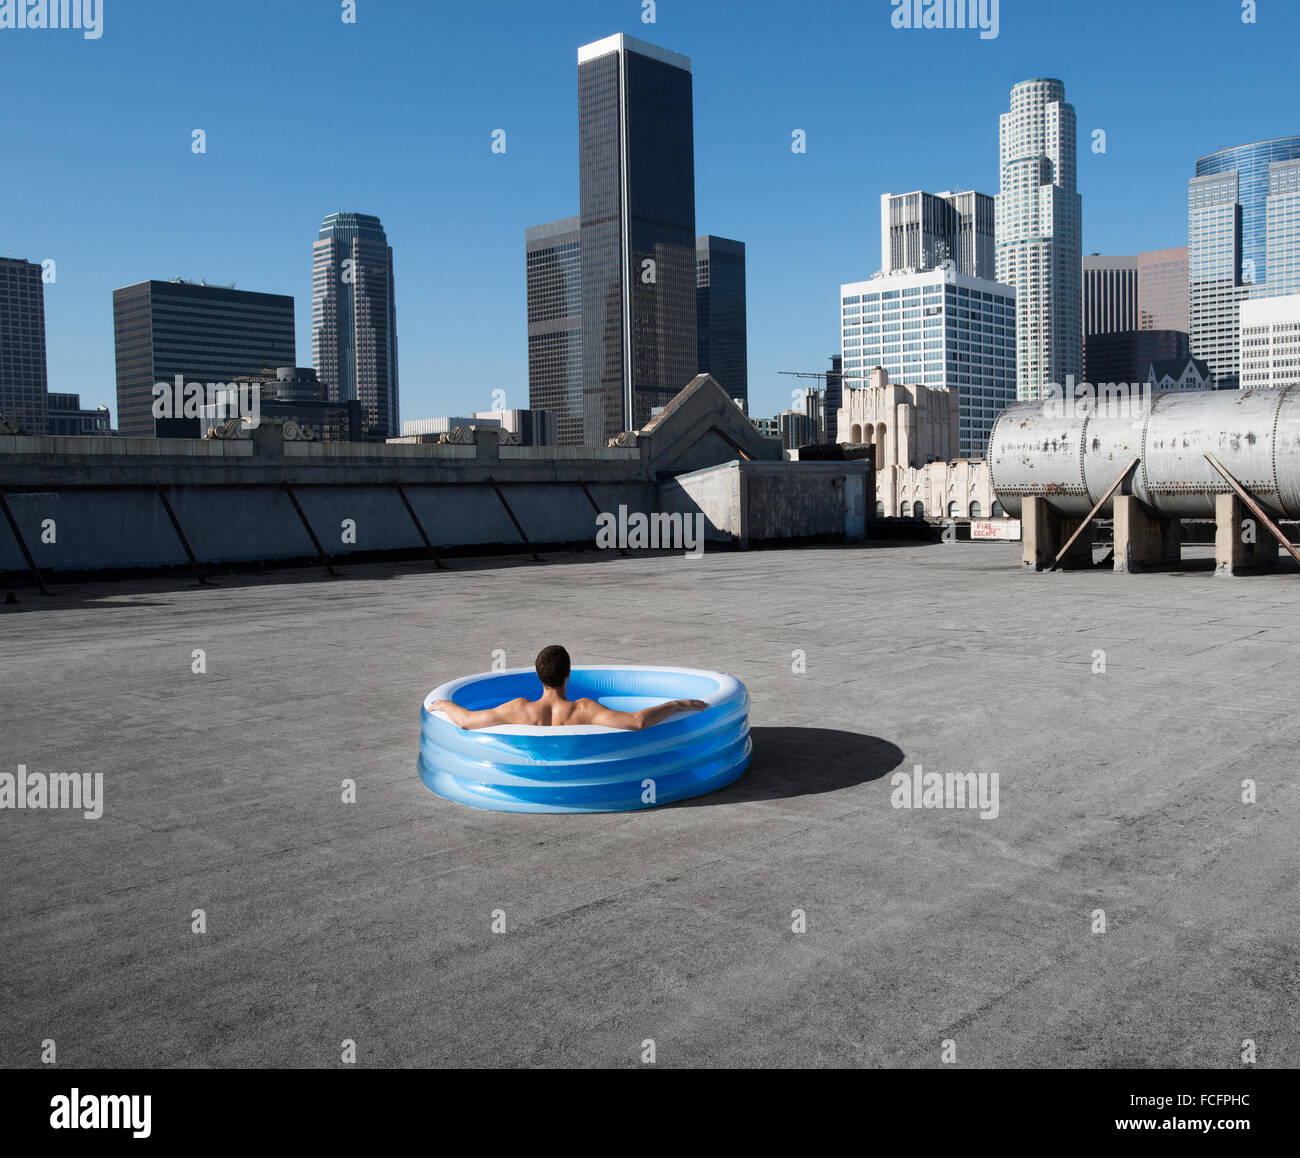 Un hombre sentado en una pequeña piscina de agua inflable en una azotea de la ciudad, enfriando. Foto de stock